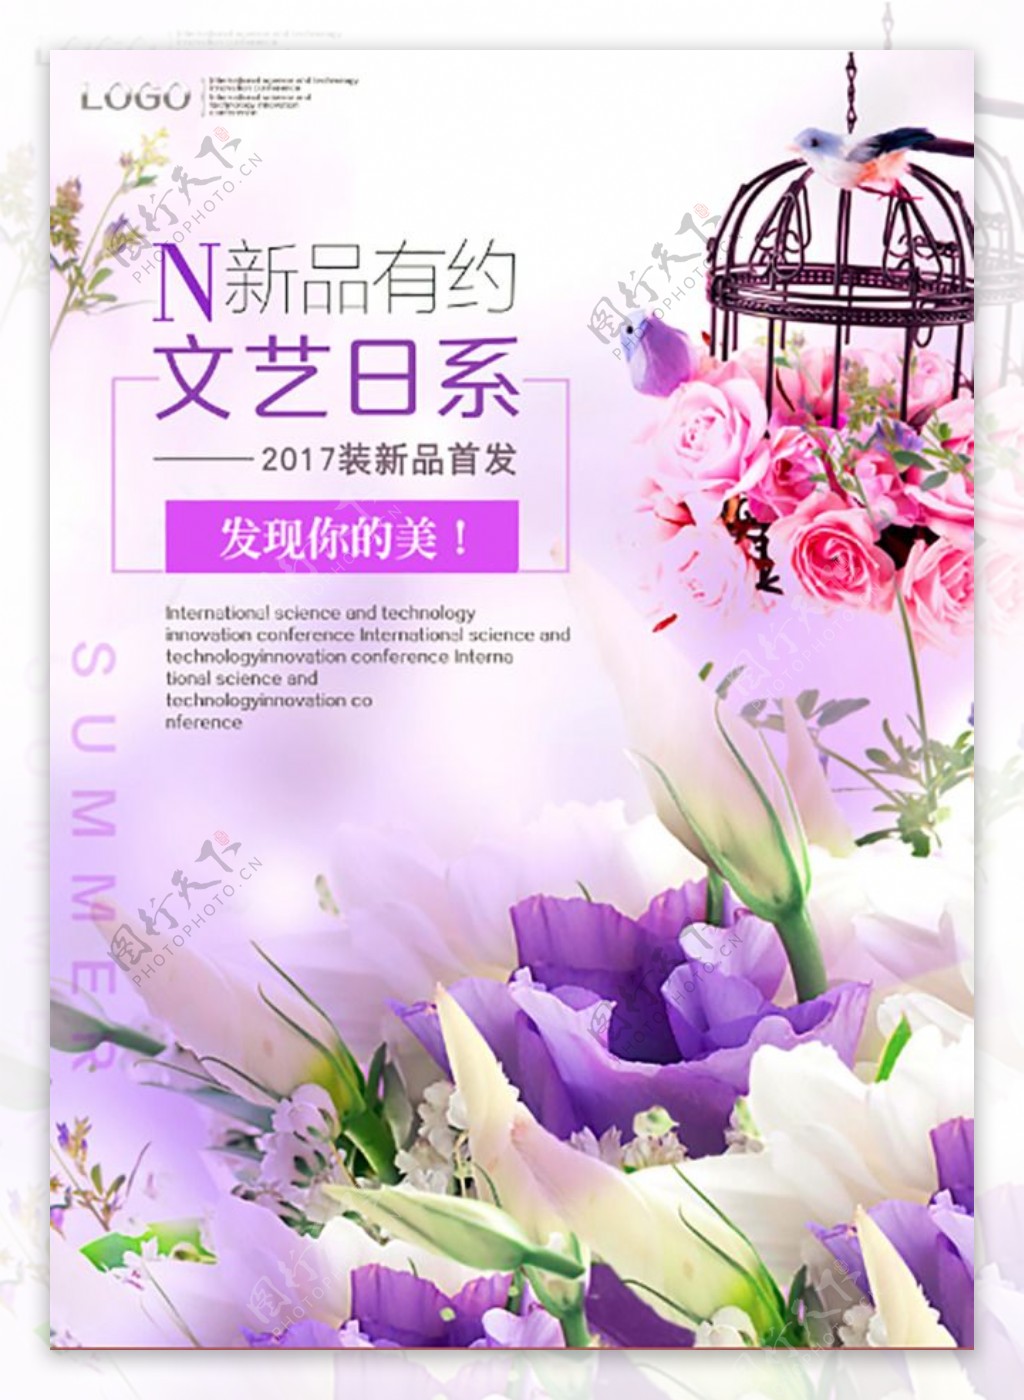 紫色色调温馨浪漫海报